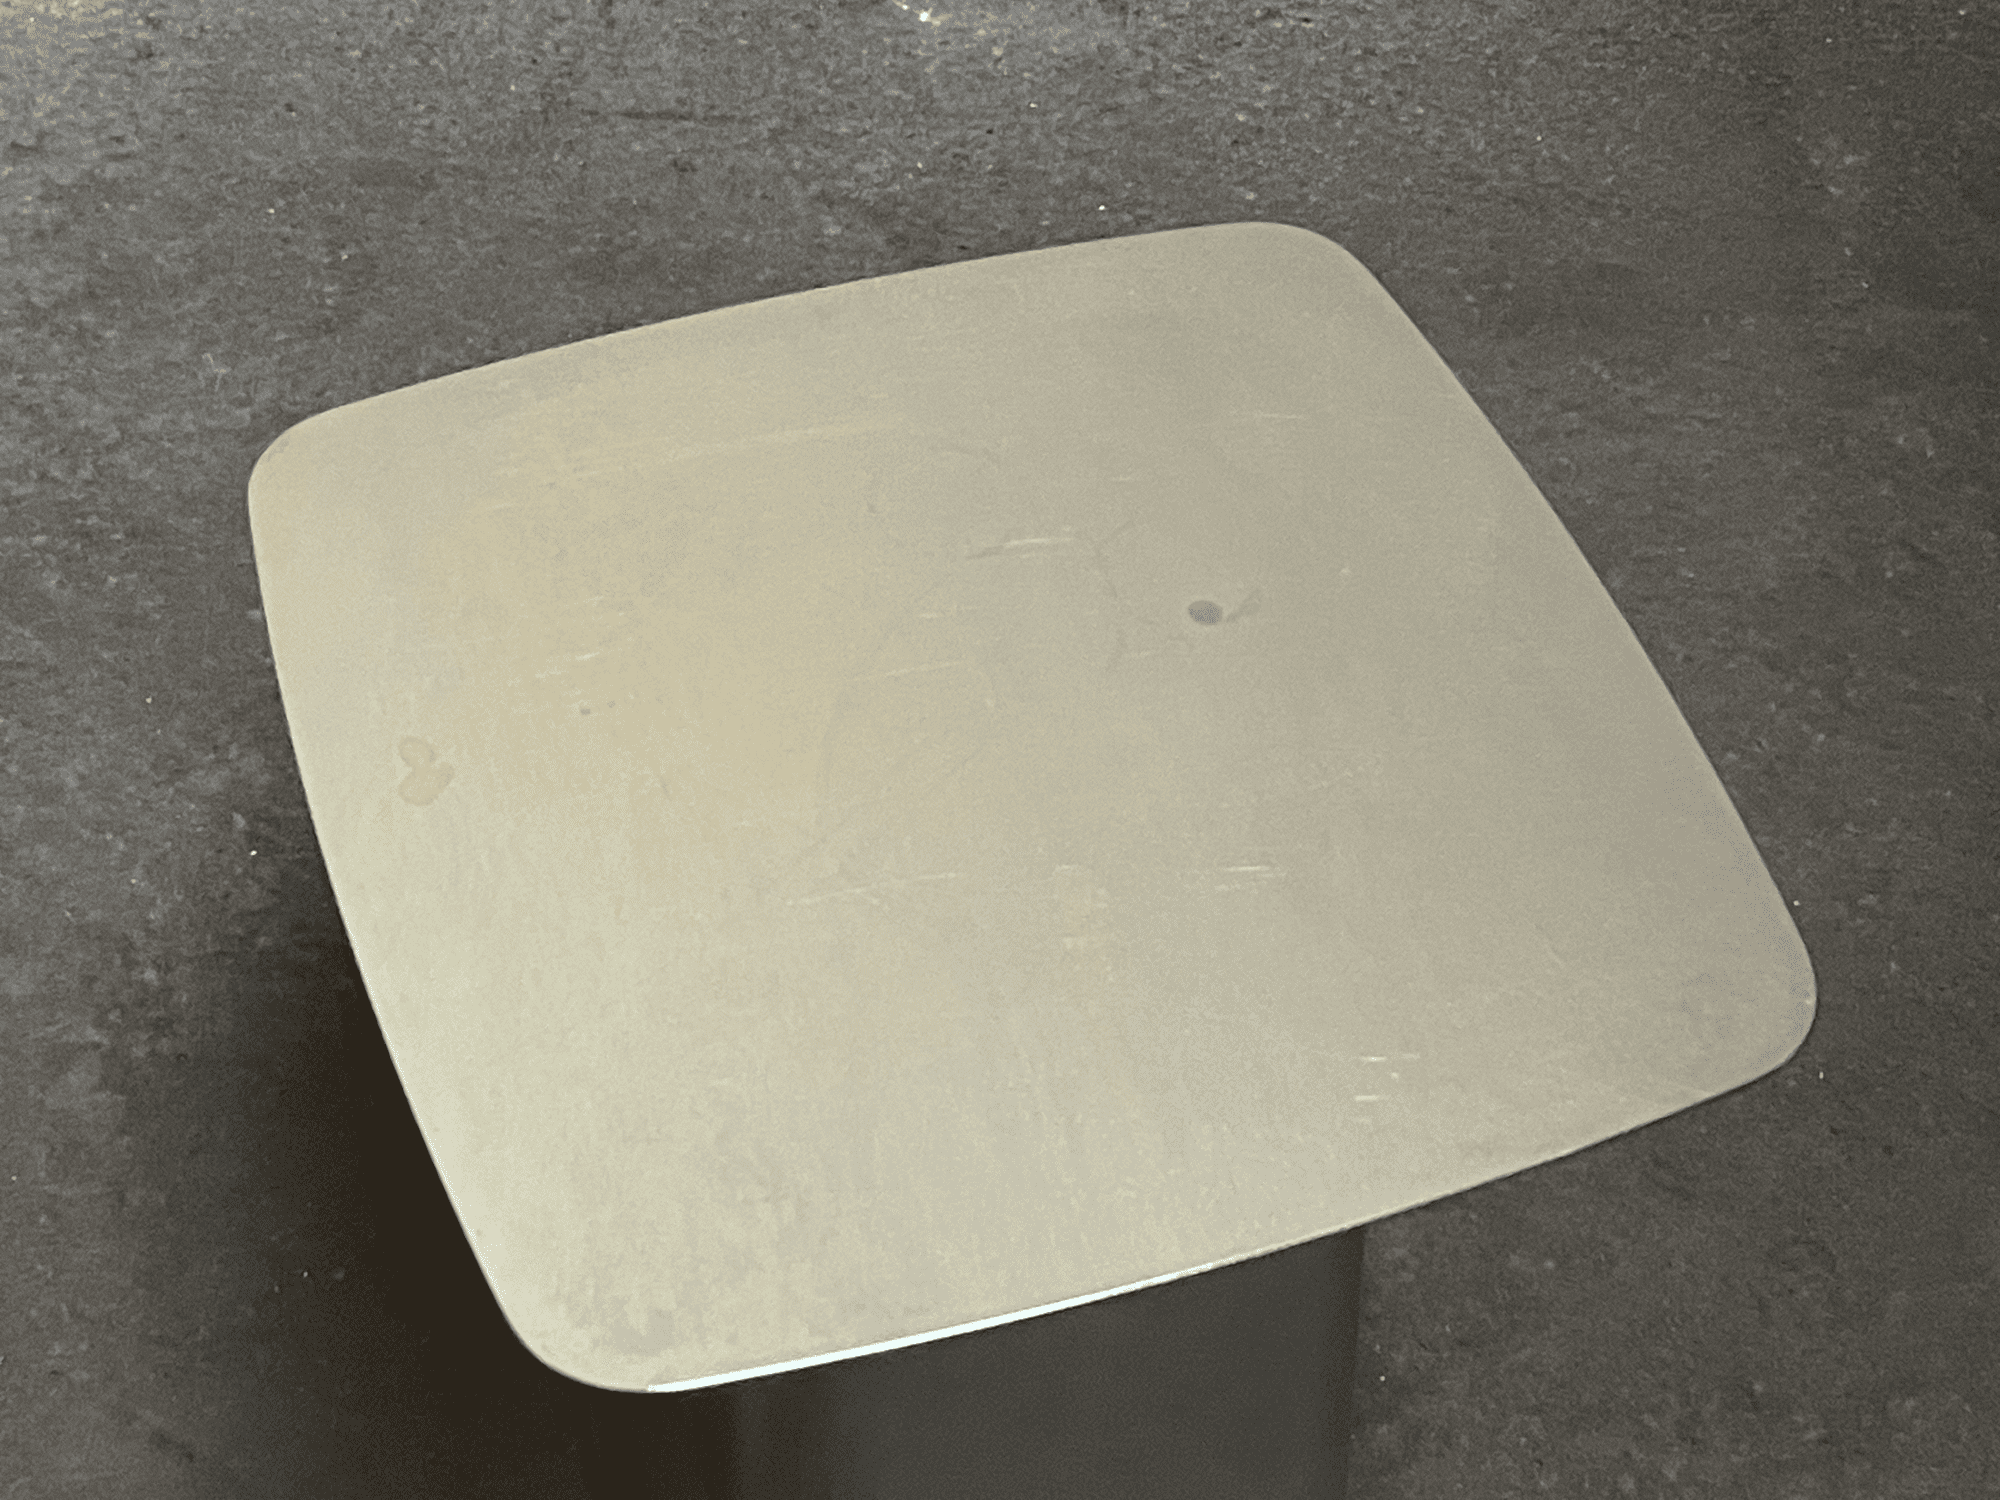 Metal Side Table Outdoor Beistelltisch Silber